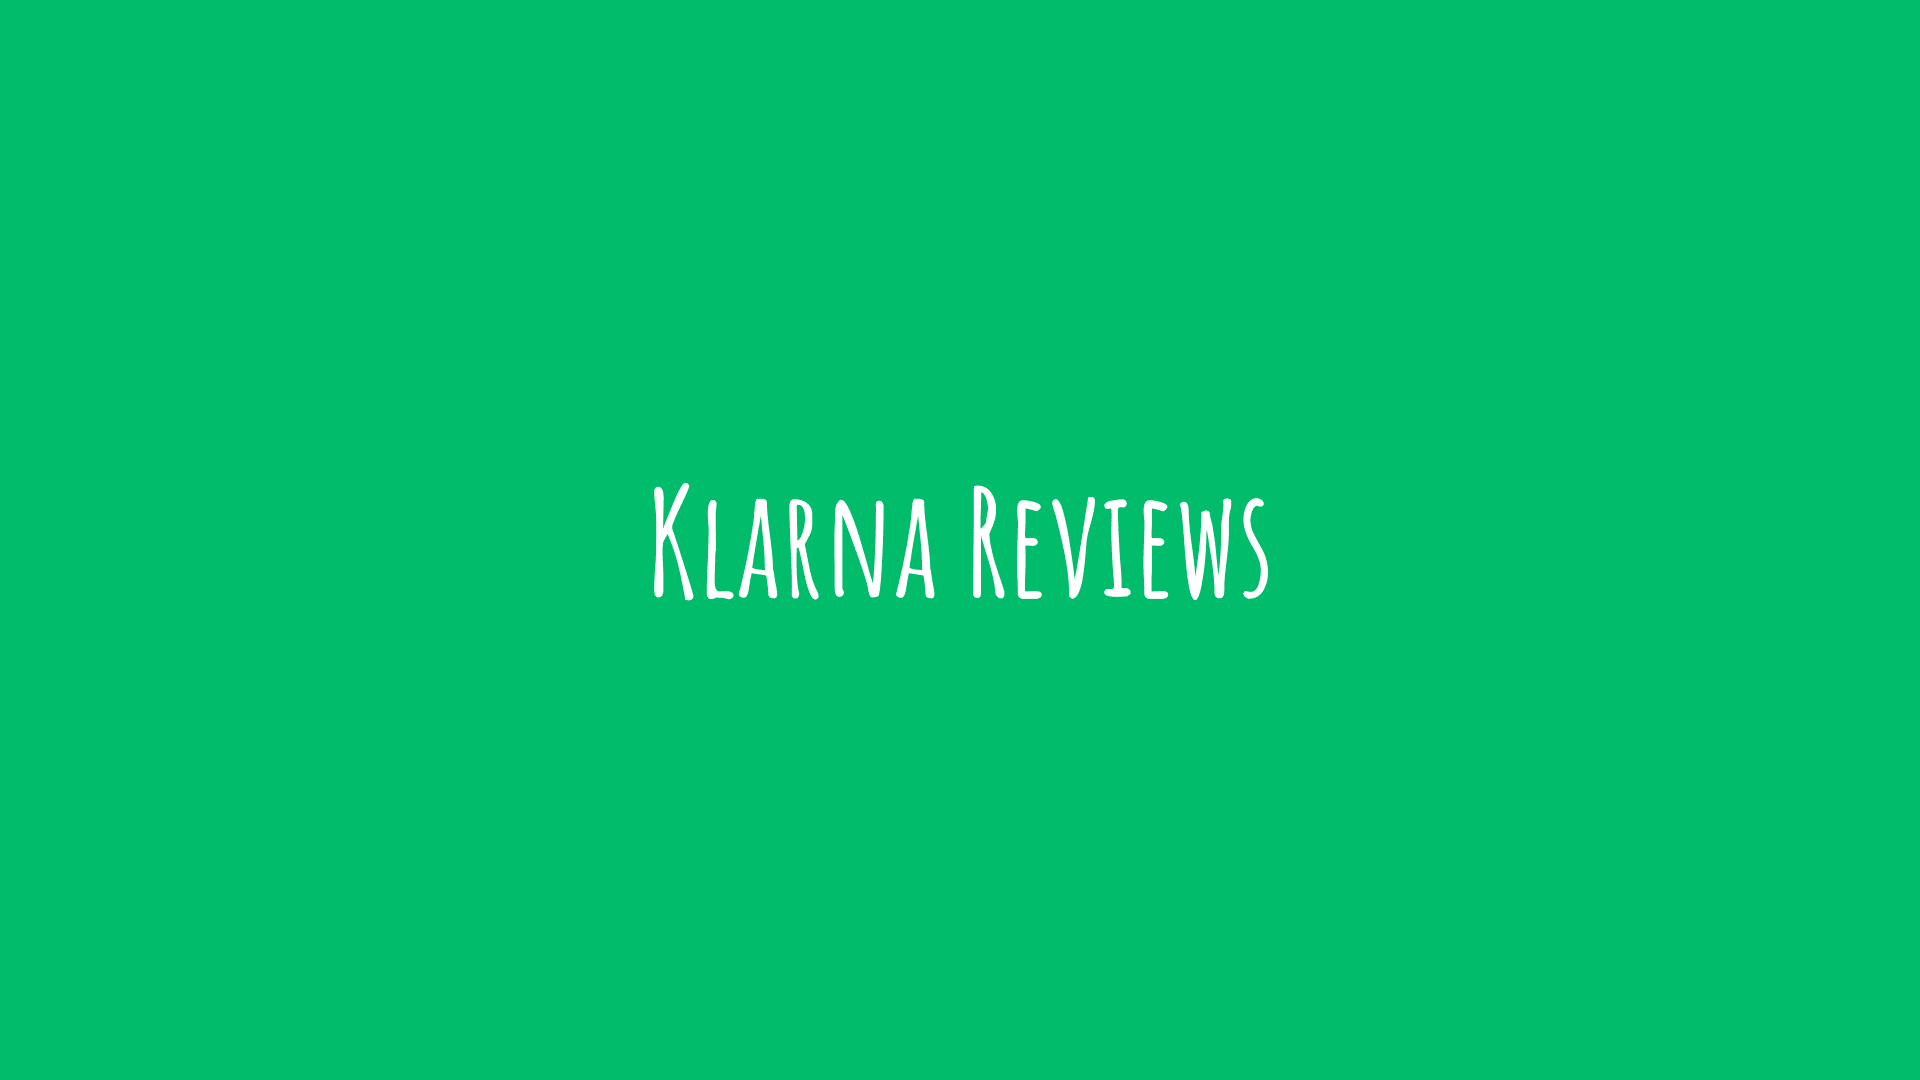 klarna reviews